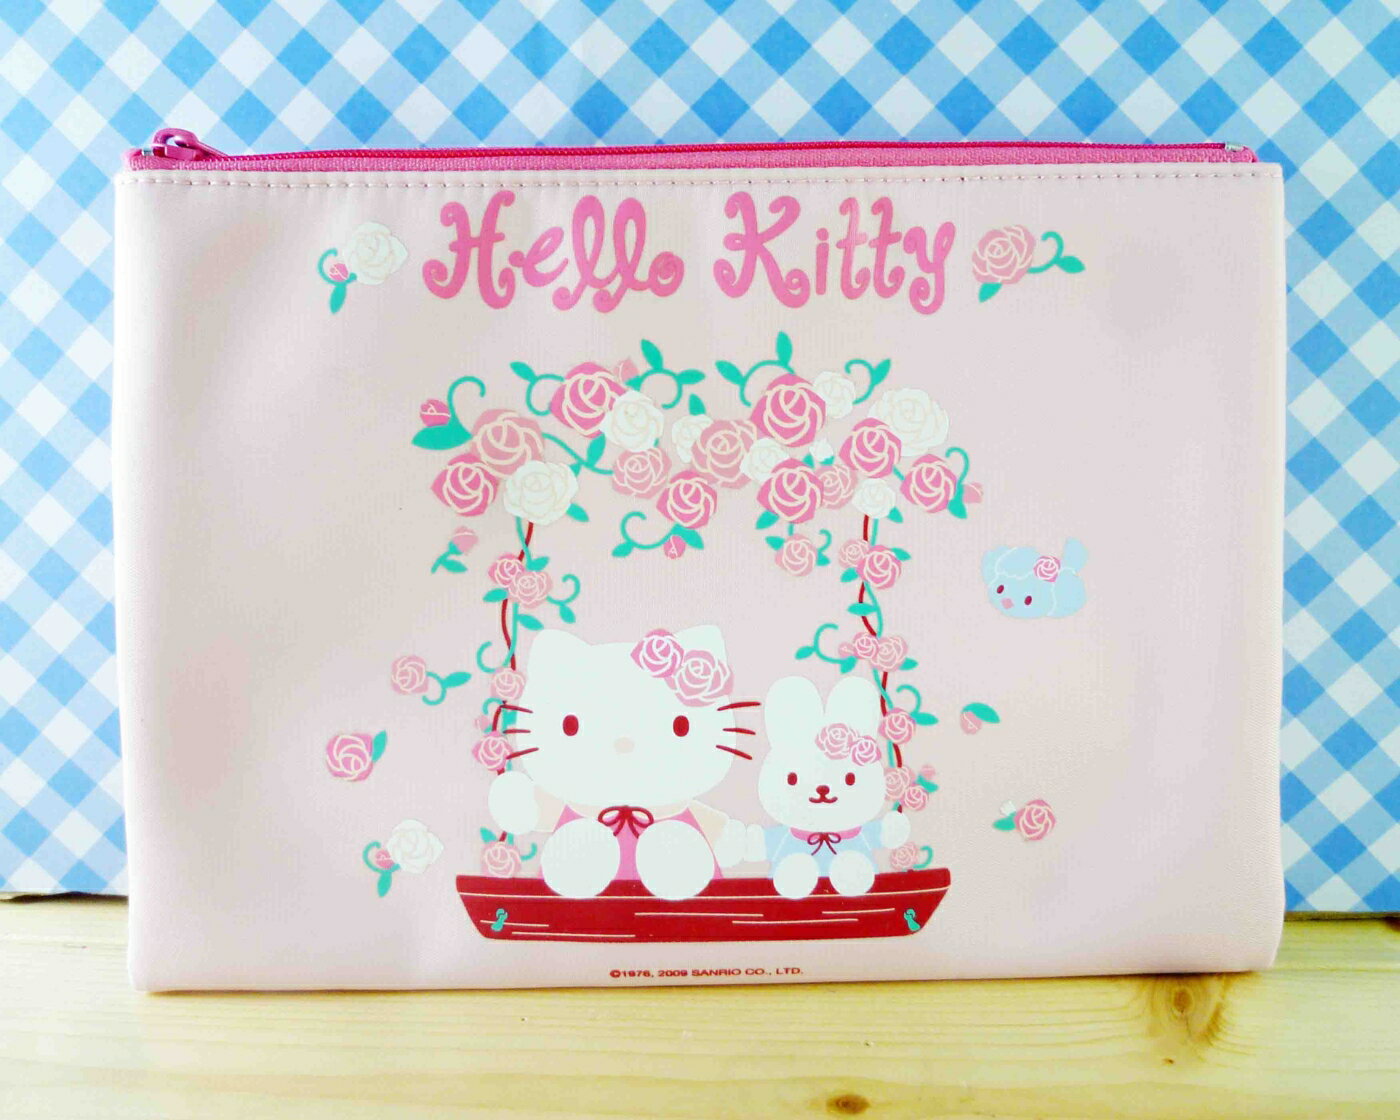 【震撼精品百貨】Hello Kitty 凱蒂貓 化妝包/筆袋-扁平化妝包-玫瑰 震撼日式精品百貨